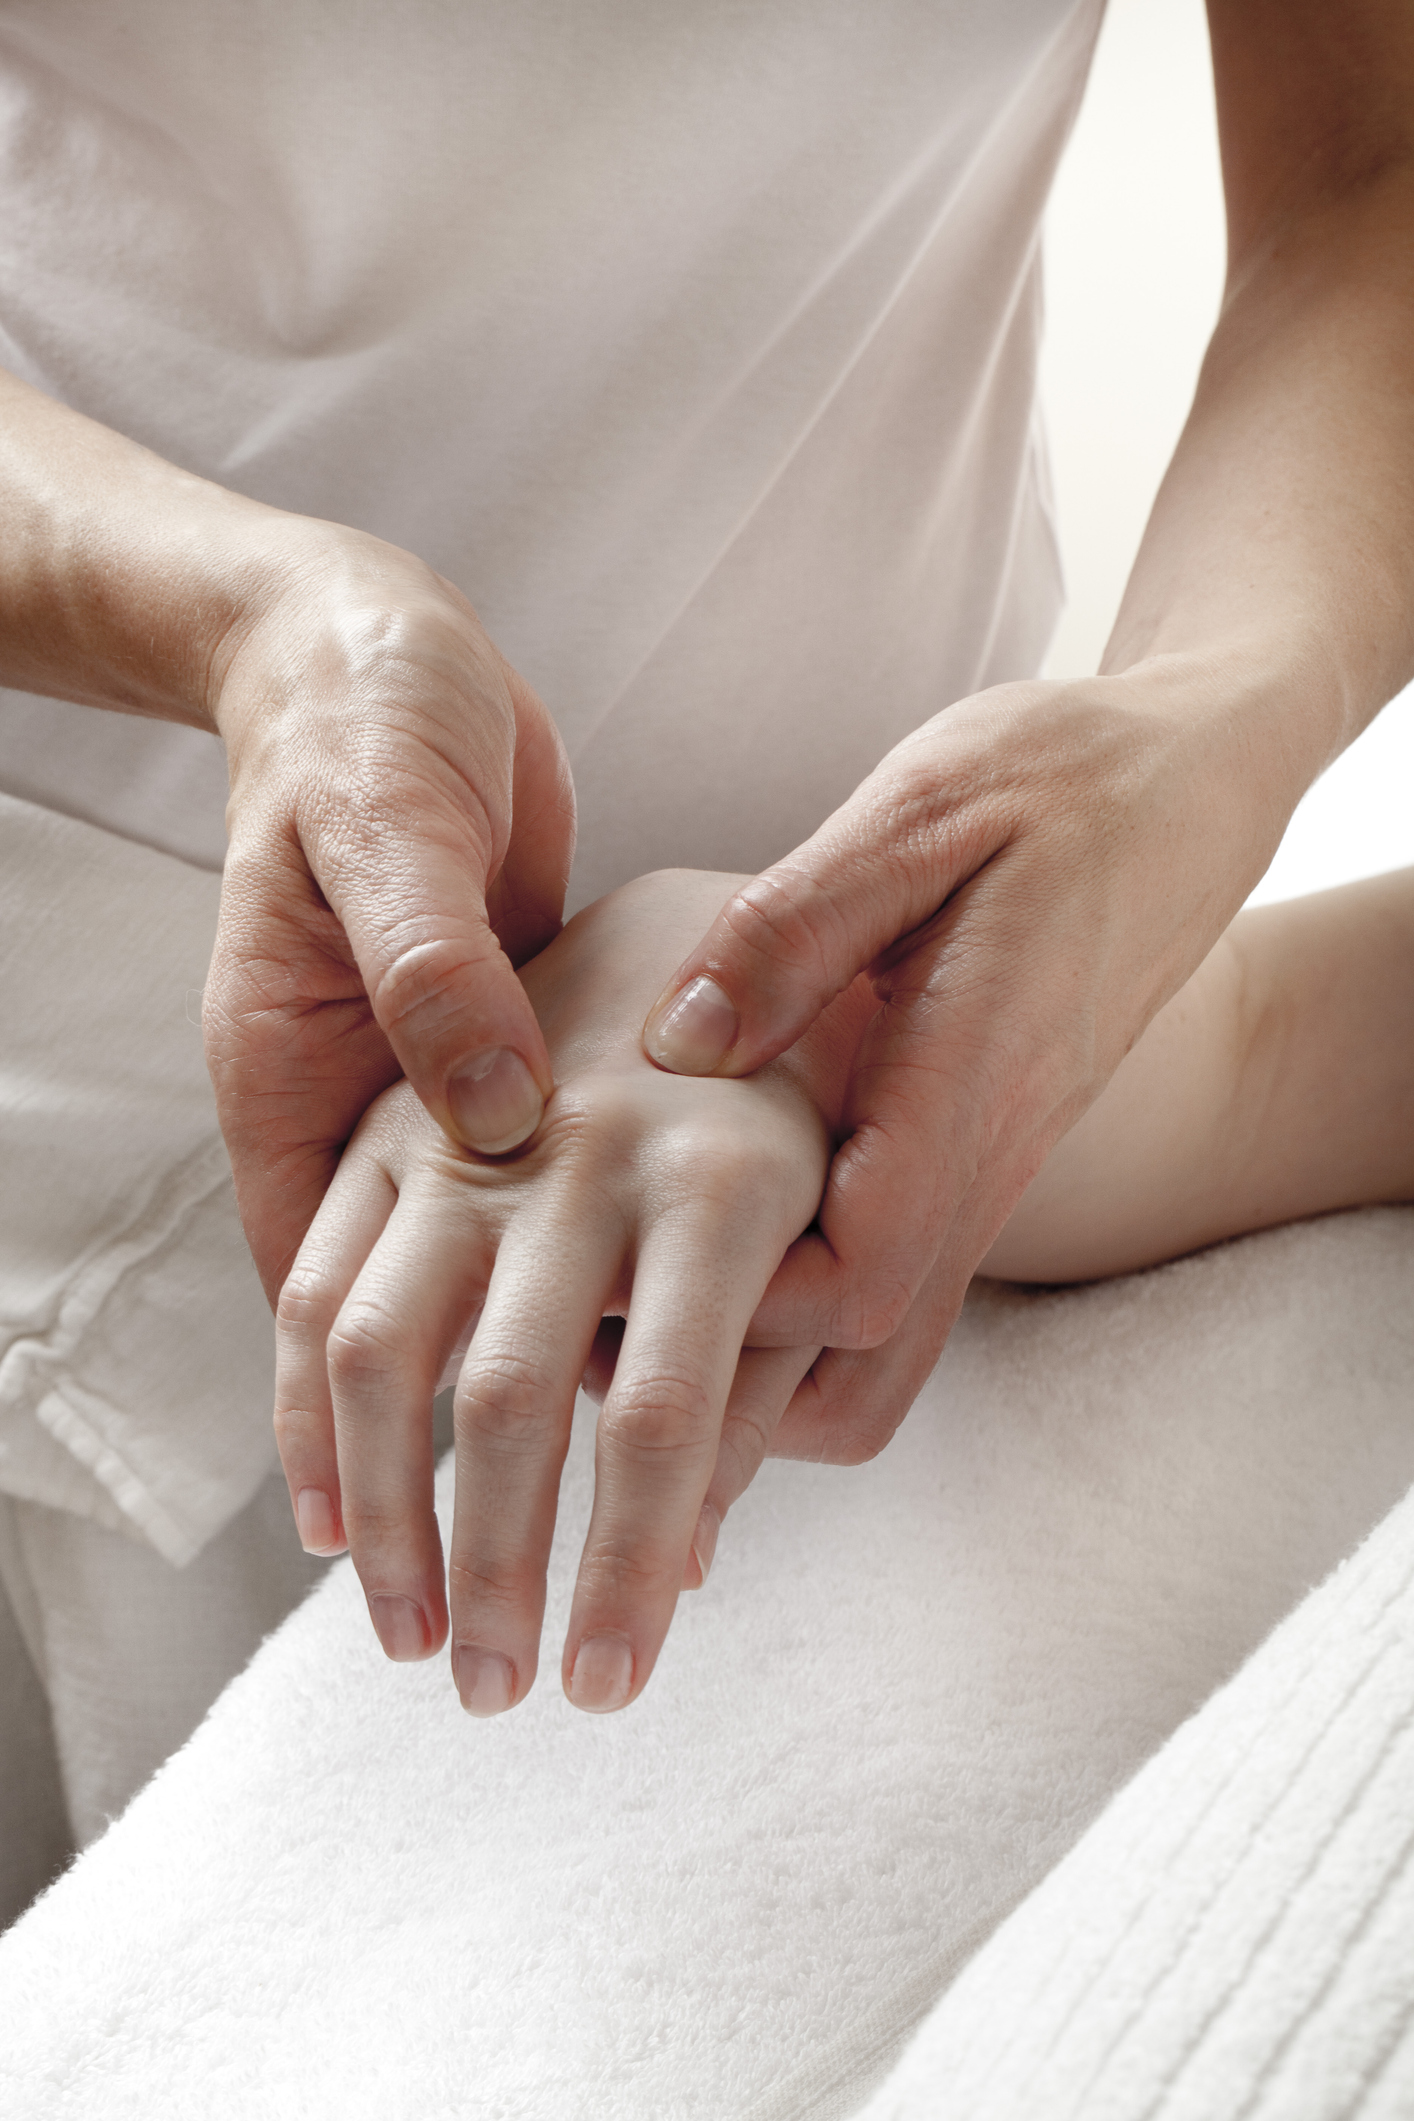 cum face artrita articulațiilor mâinilor